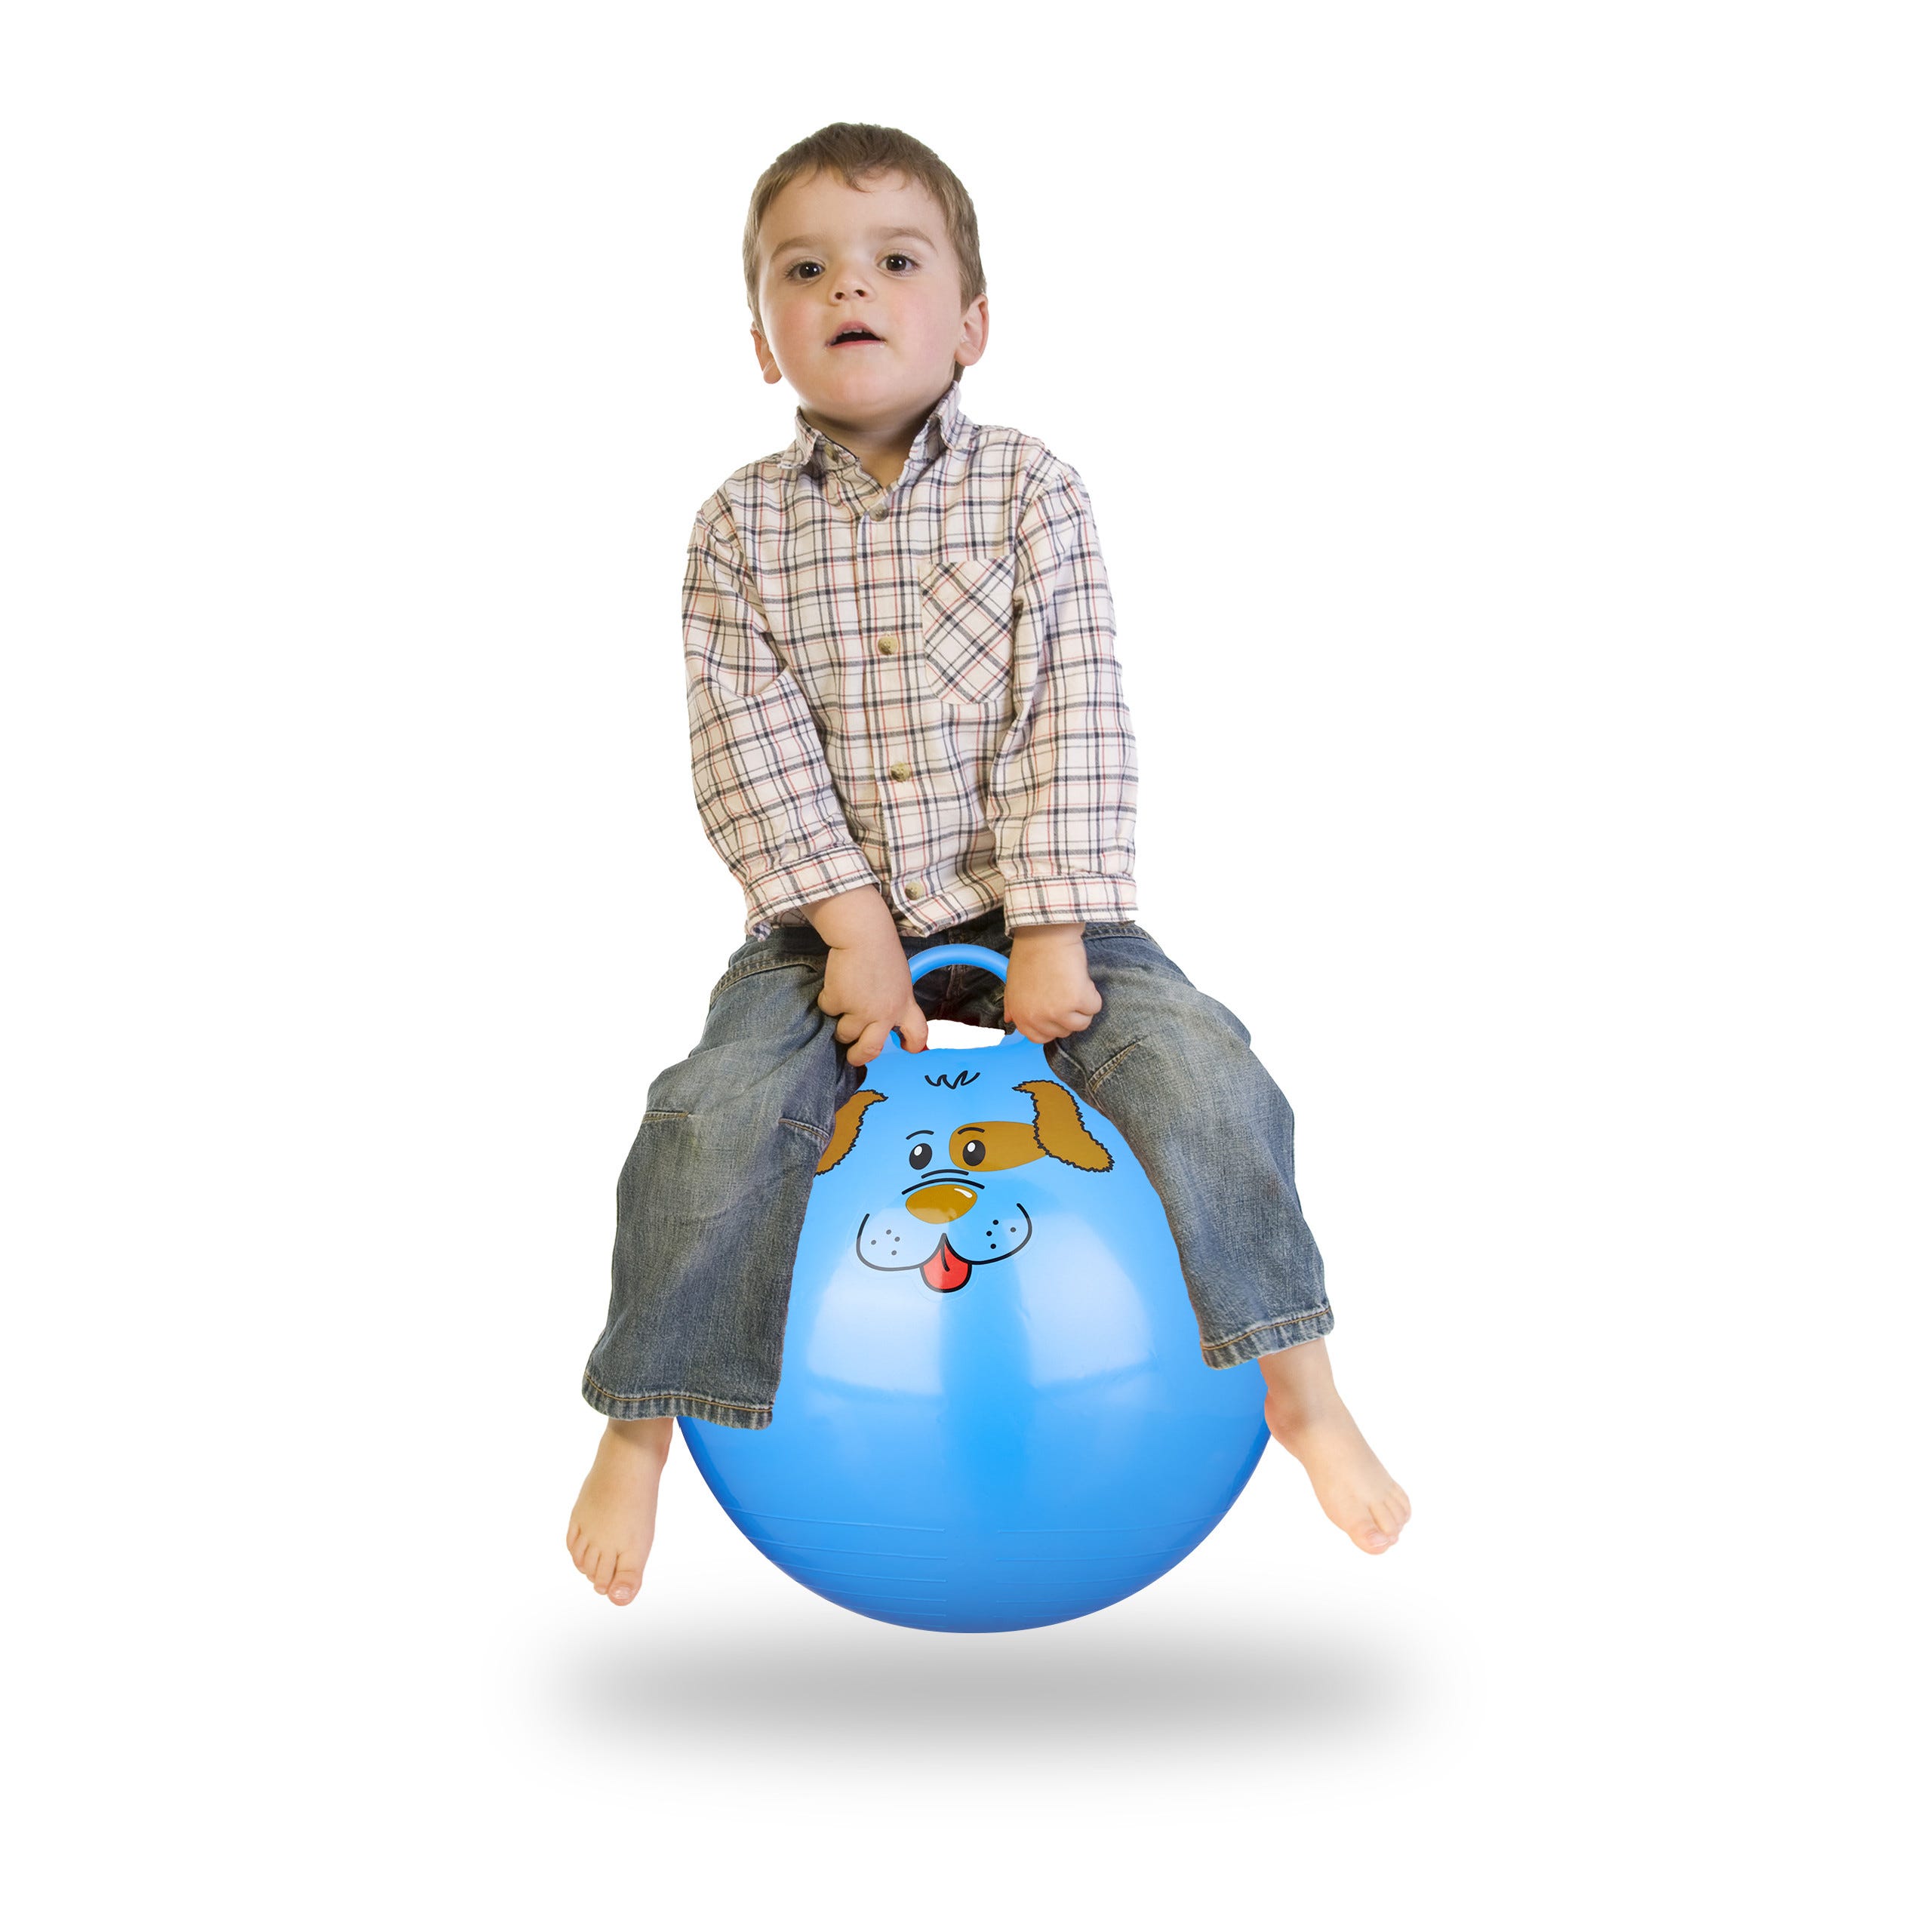 Ballon sauteur arc en ciel mutlicolore enfant 50 cm pour jeux plein air